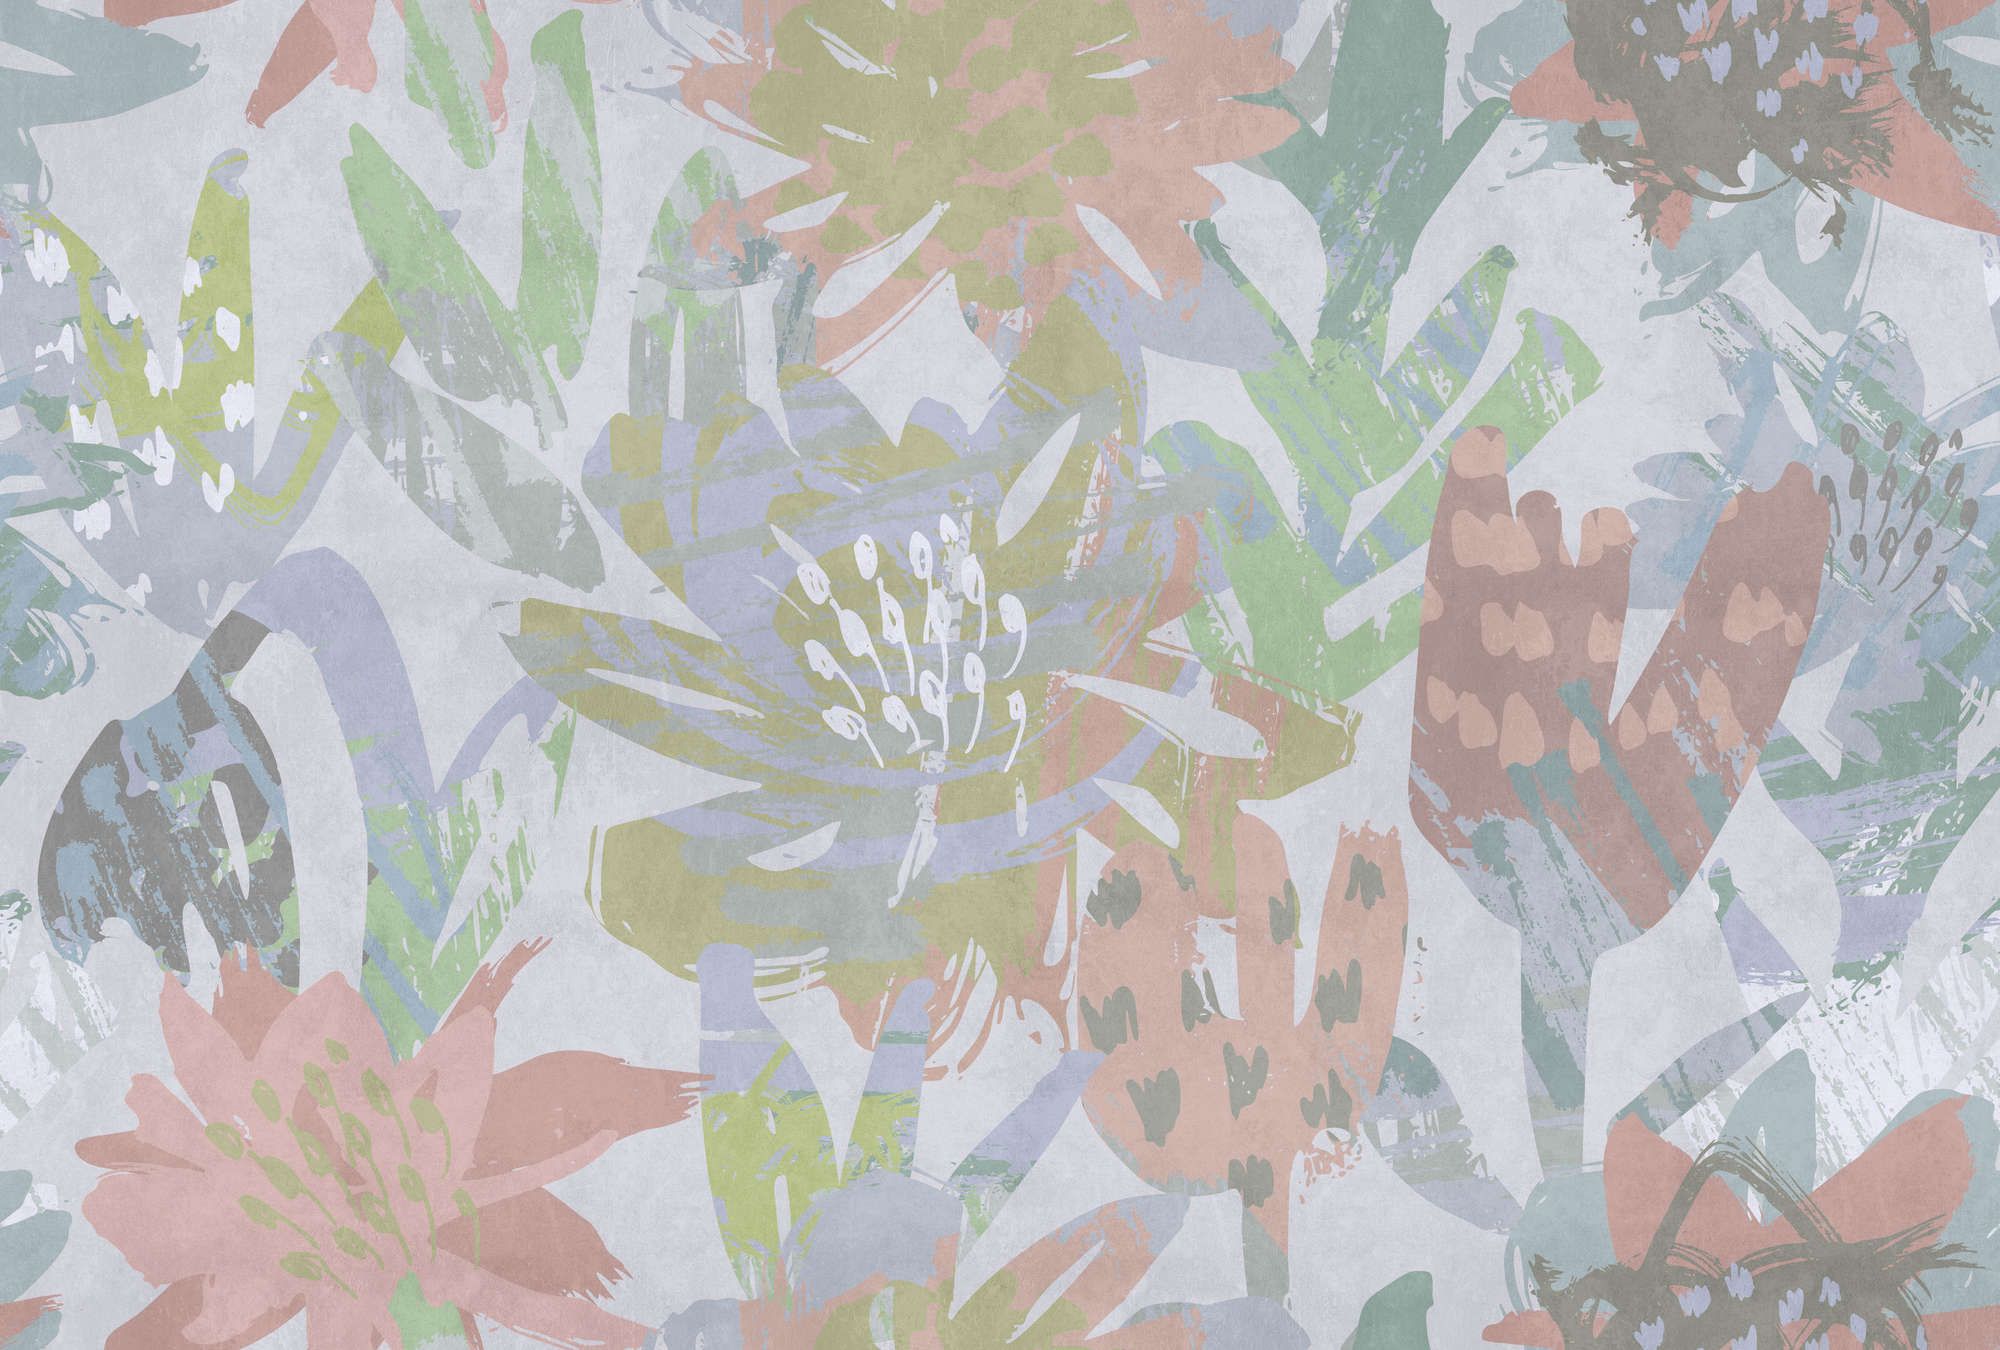             Fotomurali »sophia« - Motivo floreale colorato su intonaco di cemento - Materiali non tessuto premium liscio e leggermente lucido
        